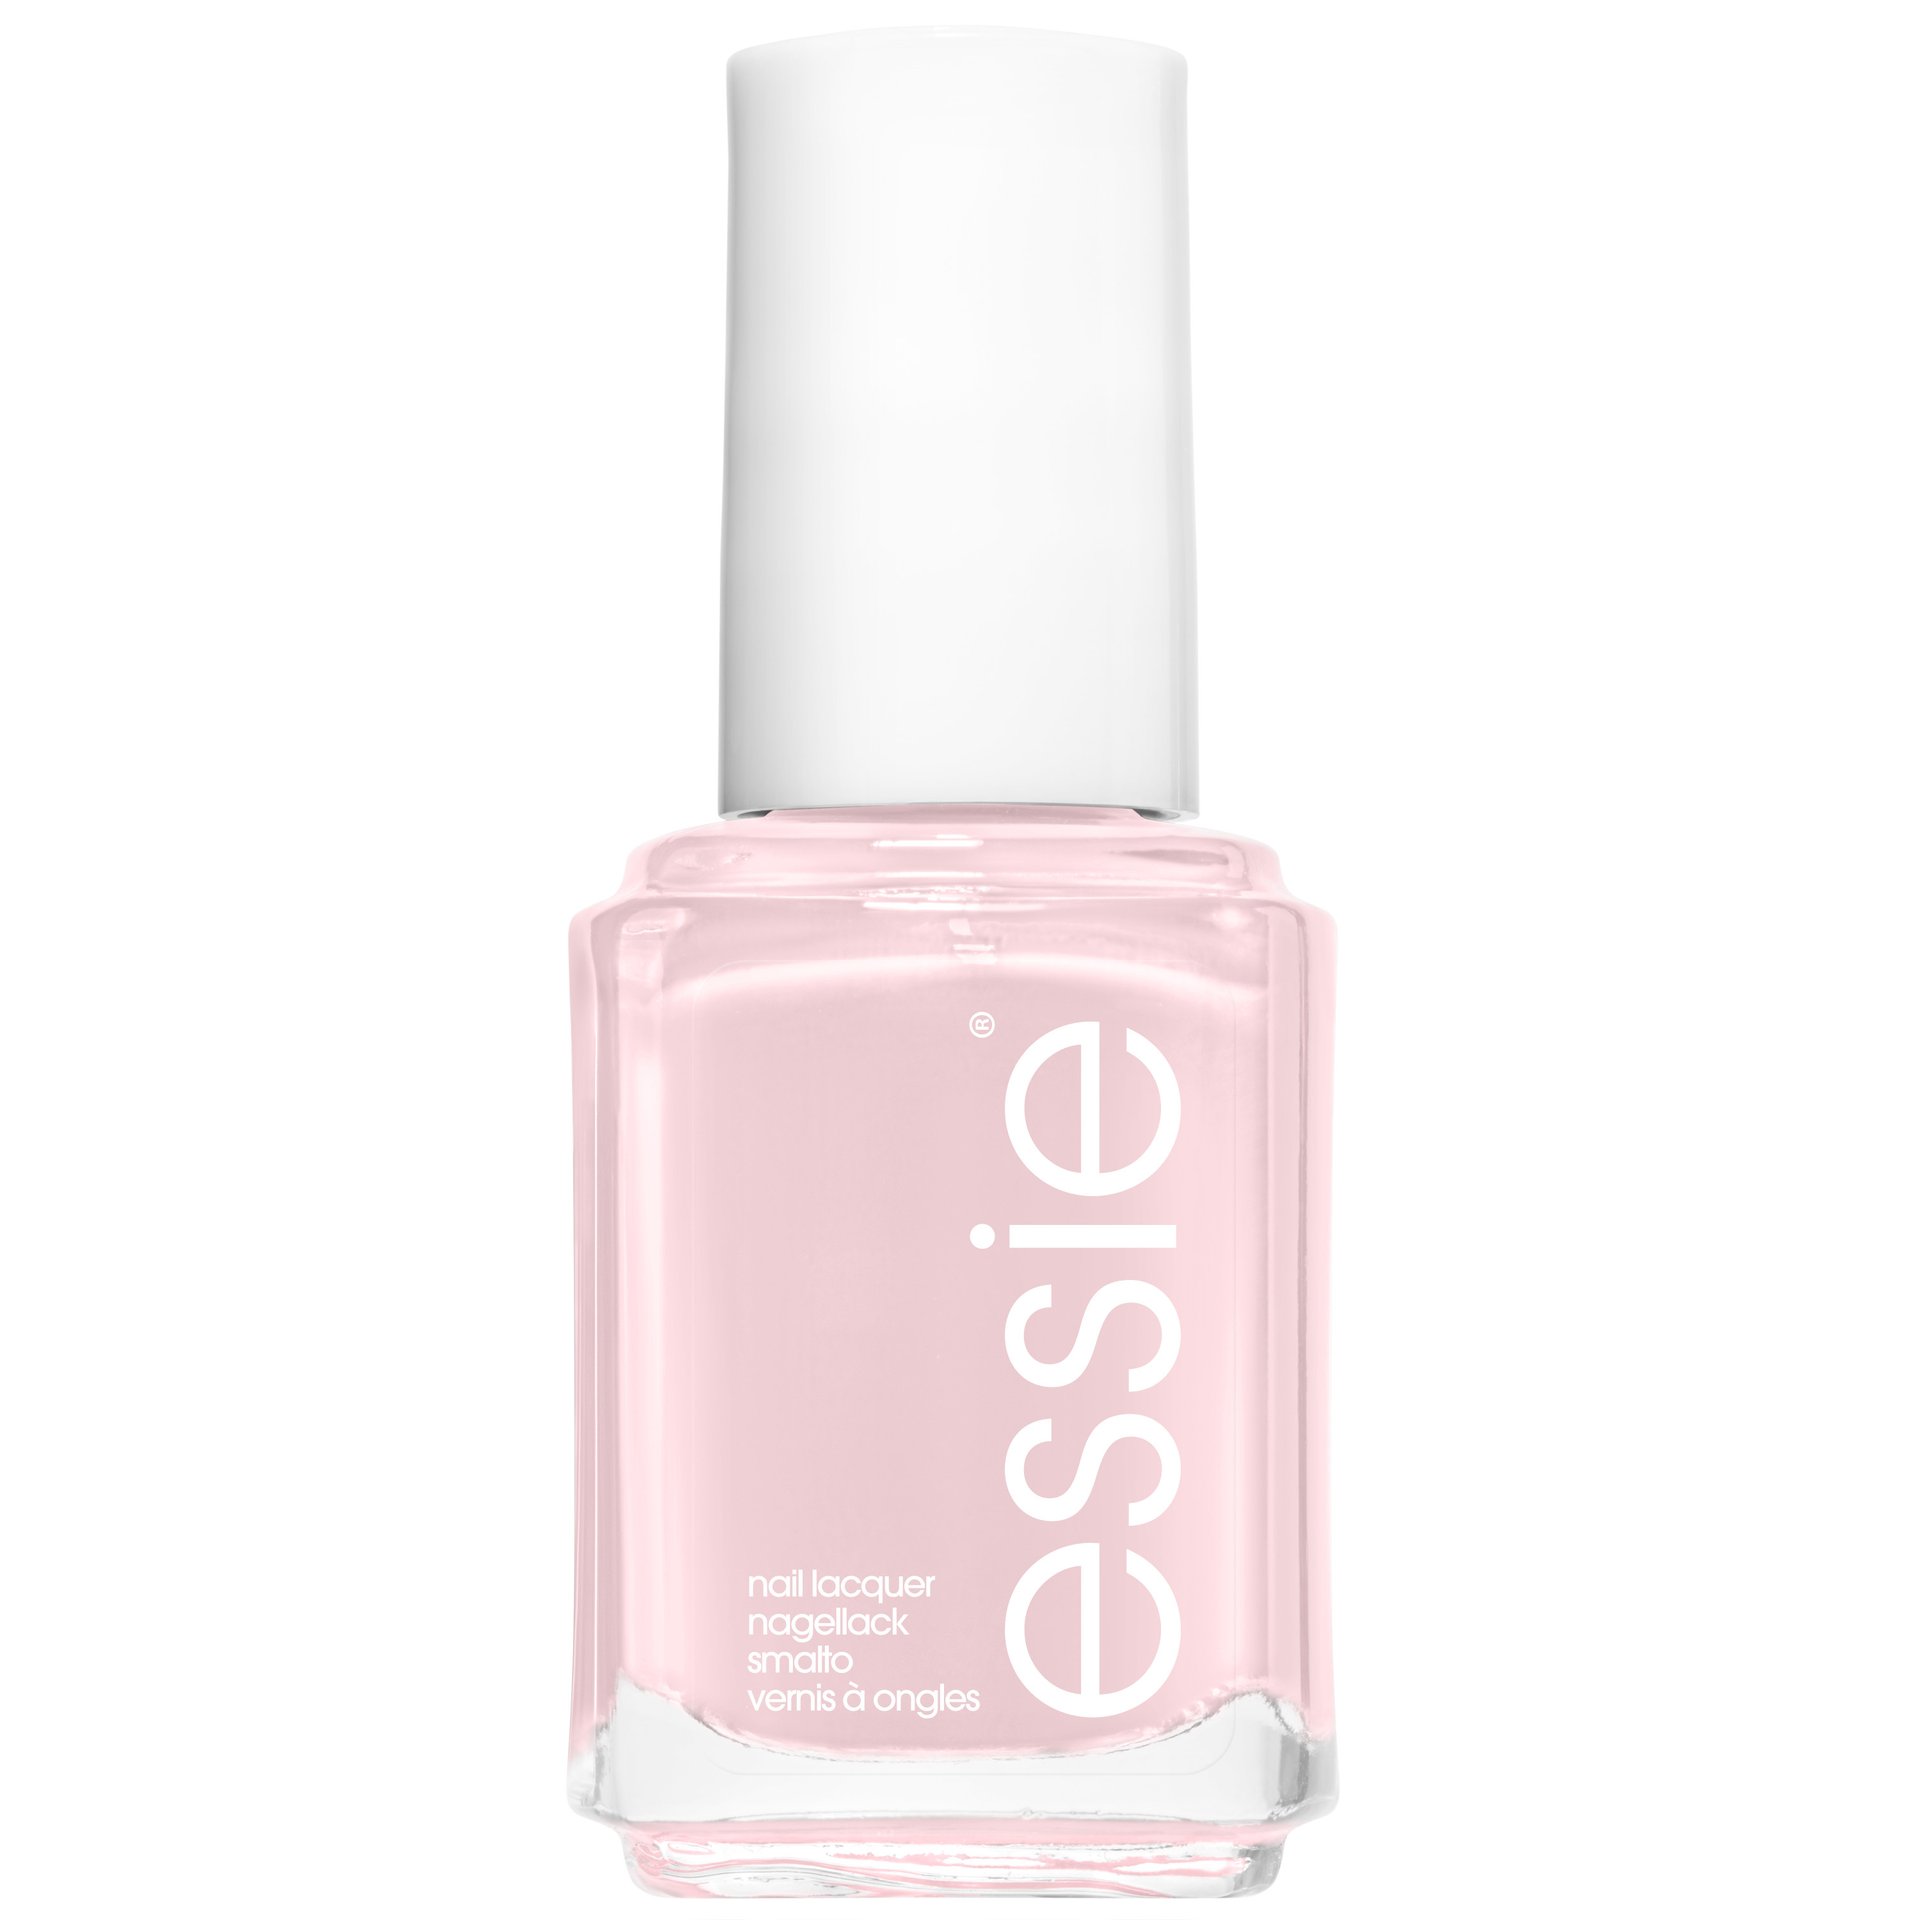 romper room - pale pink nail polish & nail colour - essie